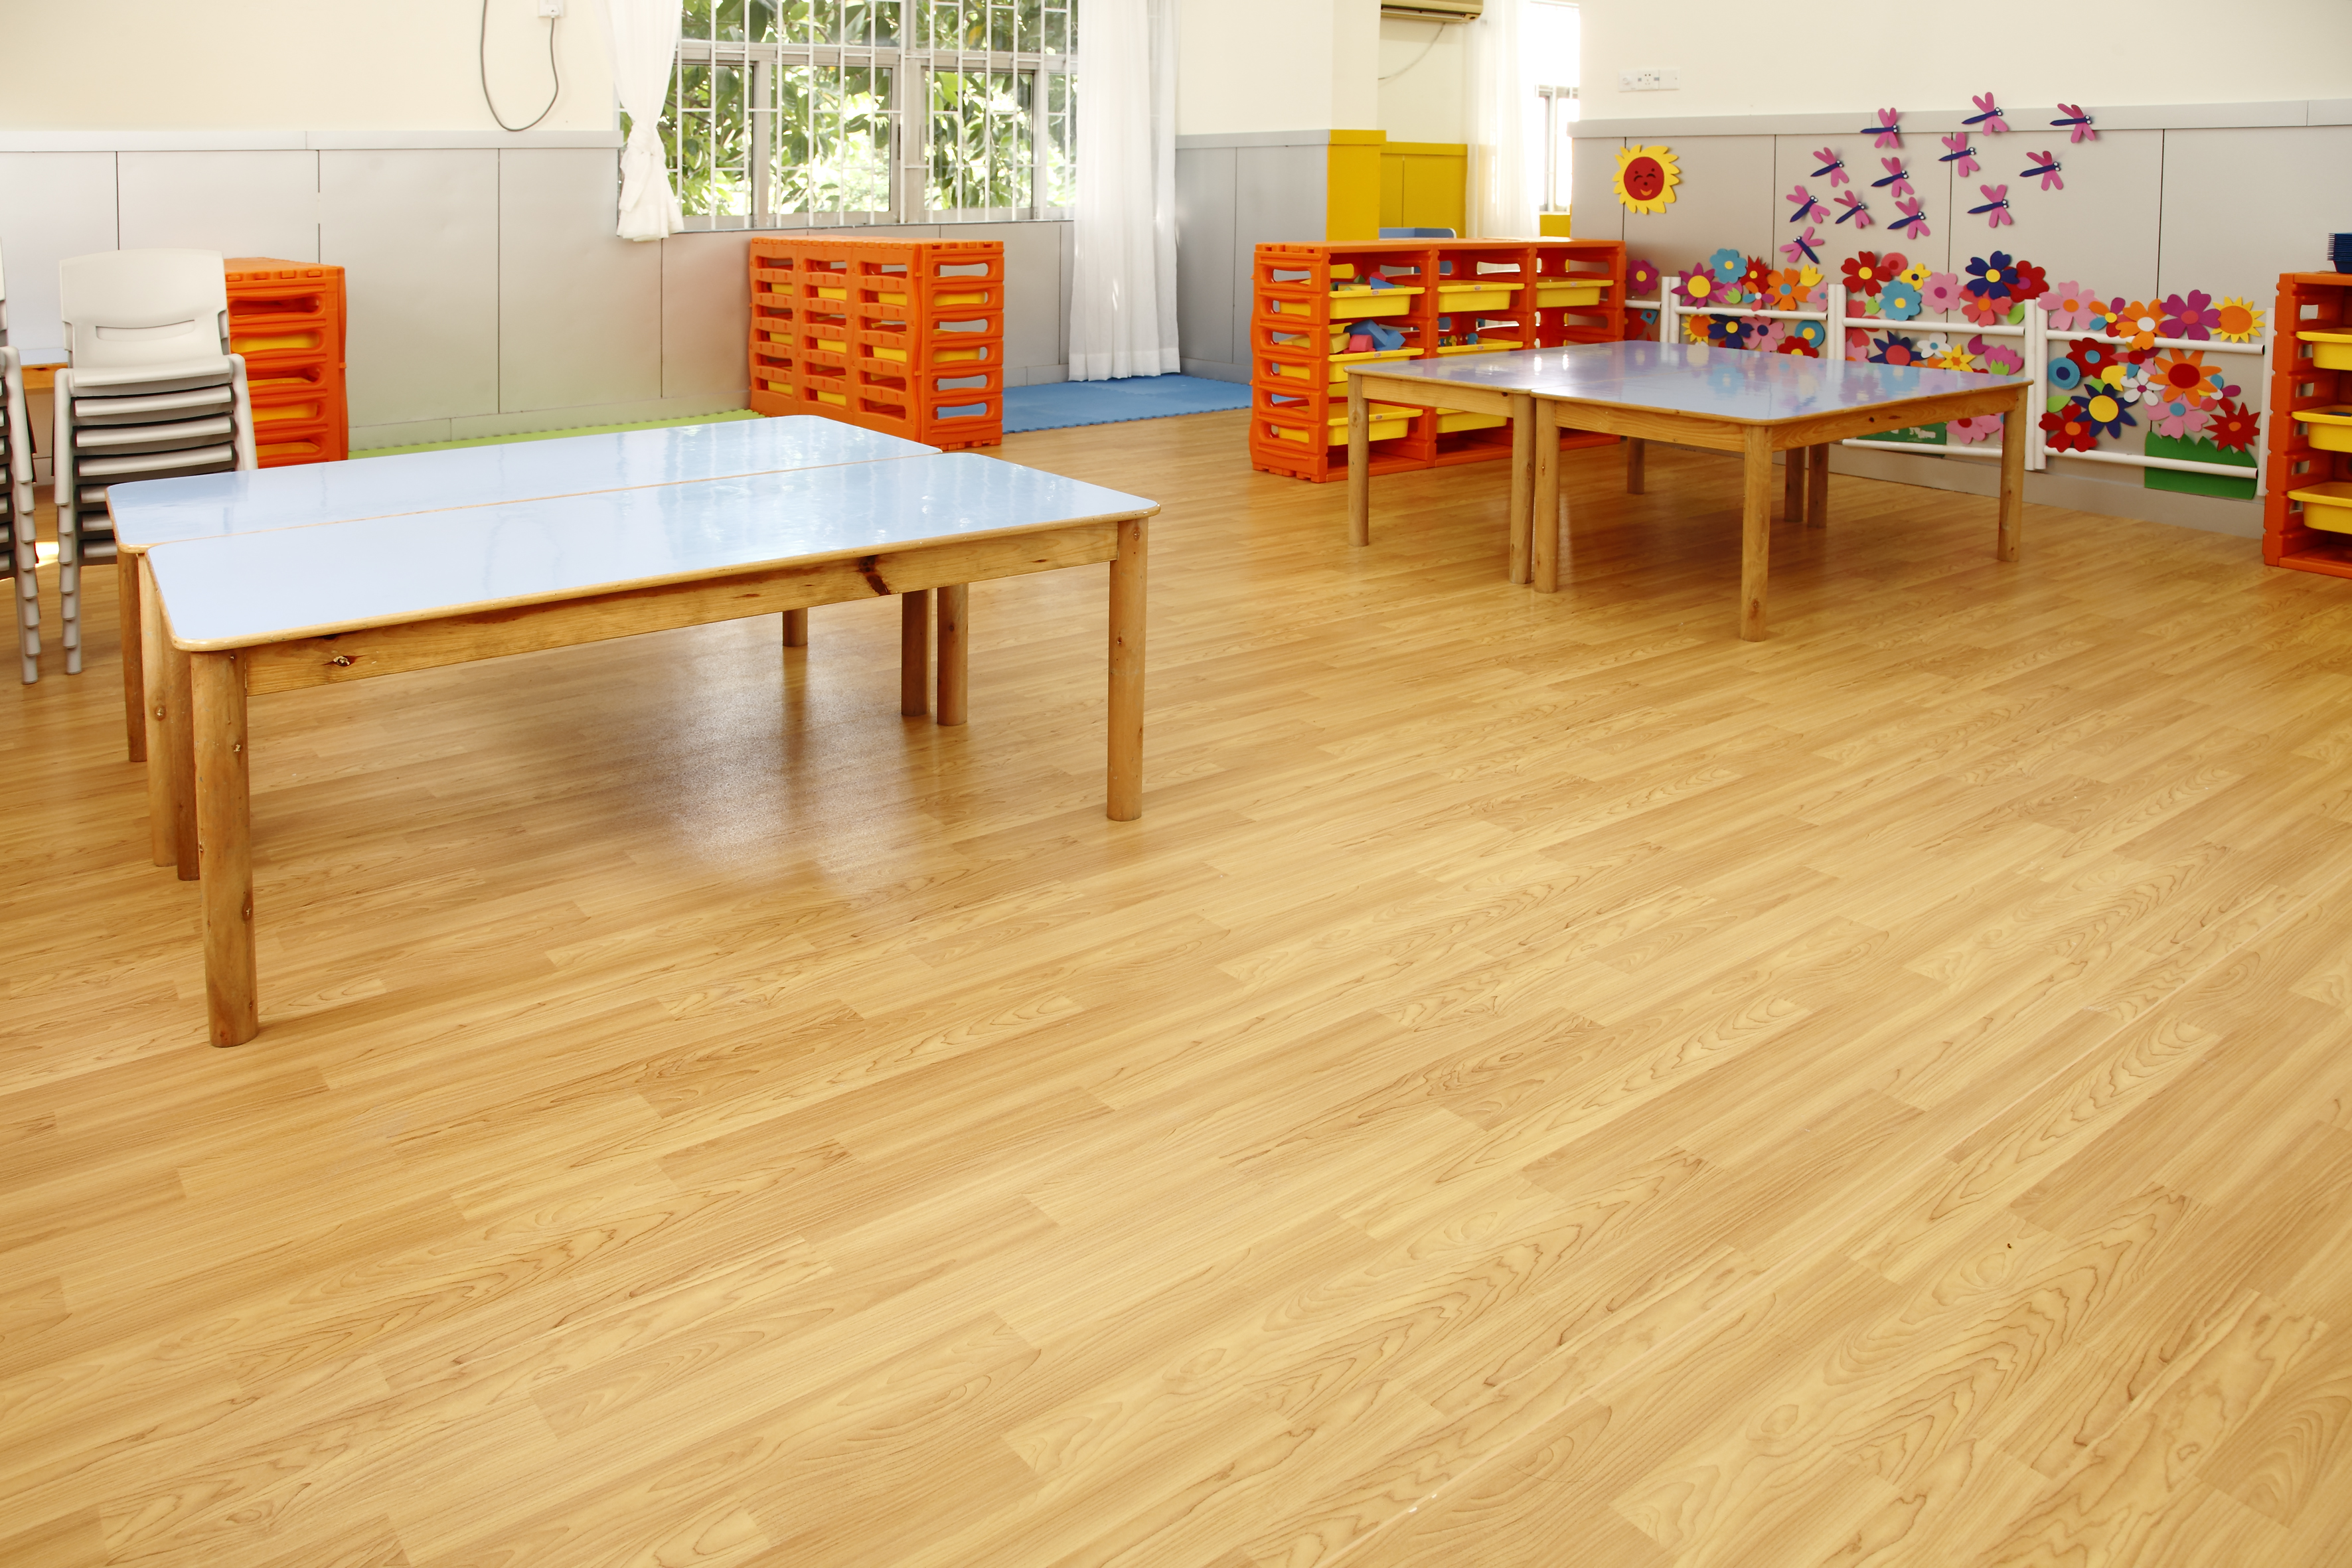 塑胶地板在幼儿园广泛应用的原因【欧陆平台】